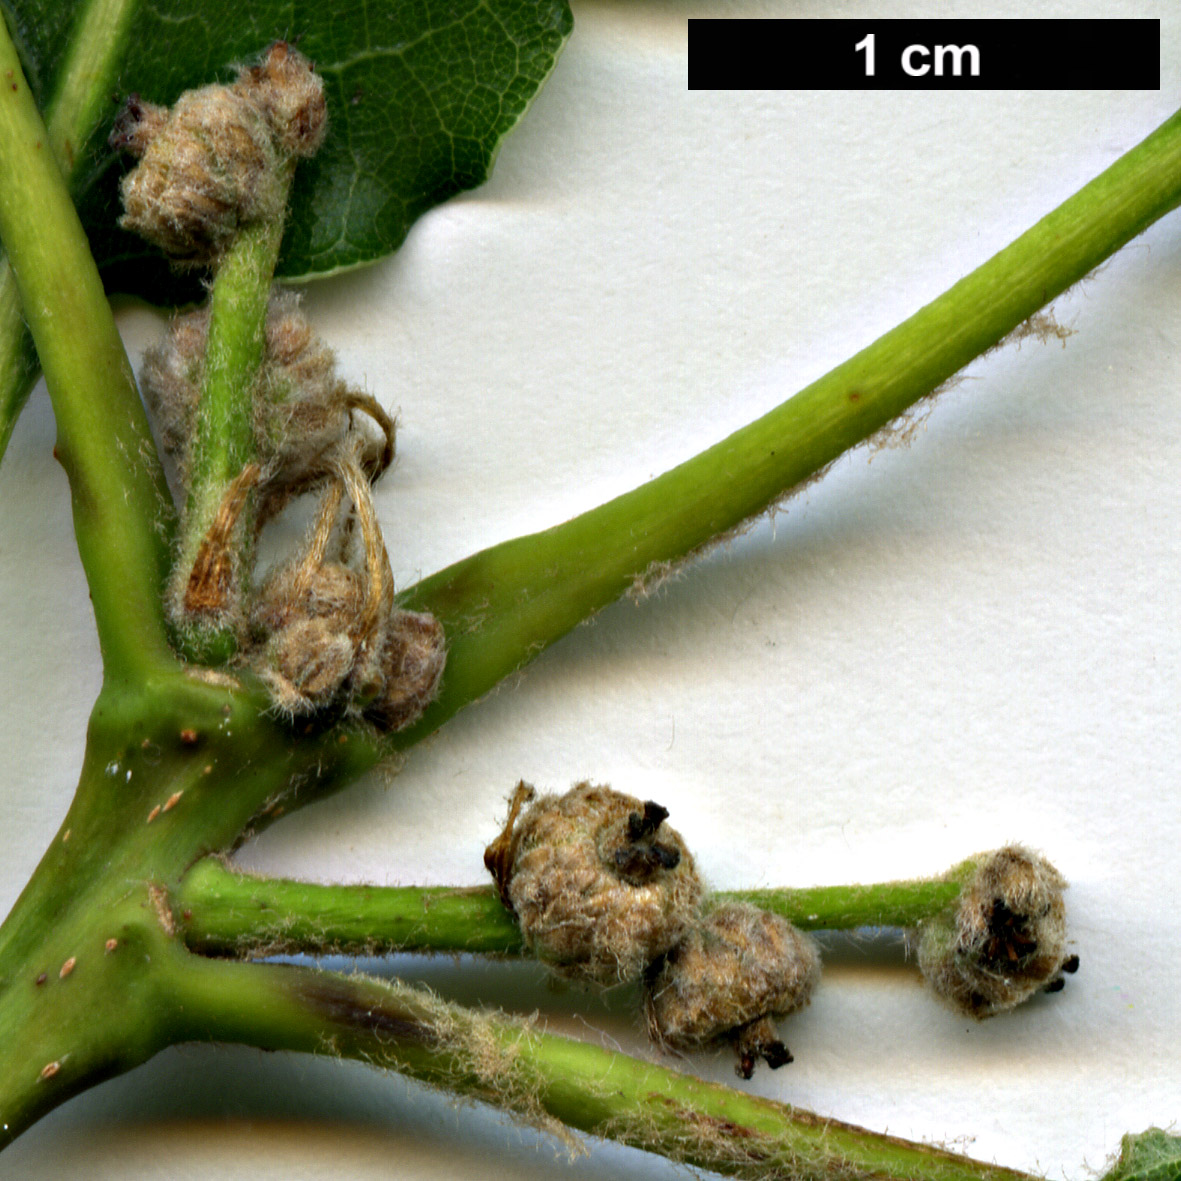 High resolution image: Family: Fagaceae - Genus: Quercus - Taxon: ×streimii - SpeciesSub: 'Kortrijk' (Q.petraea × Q.pubescens)